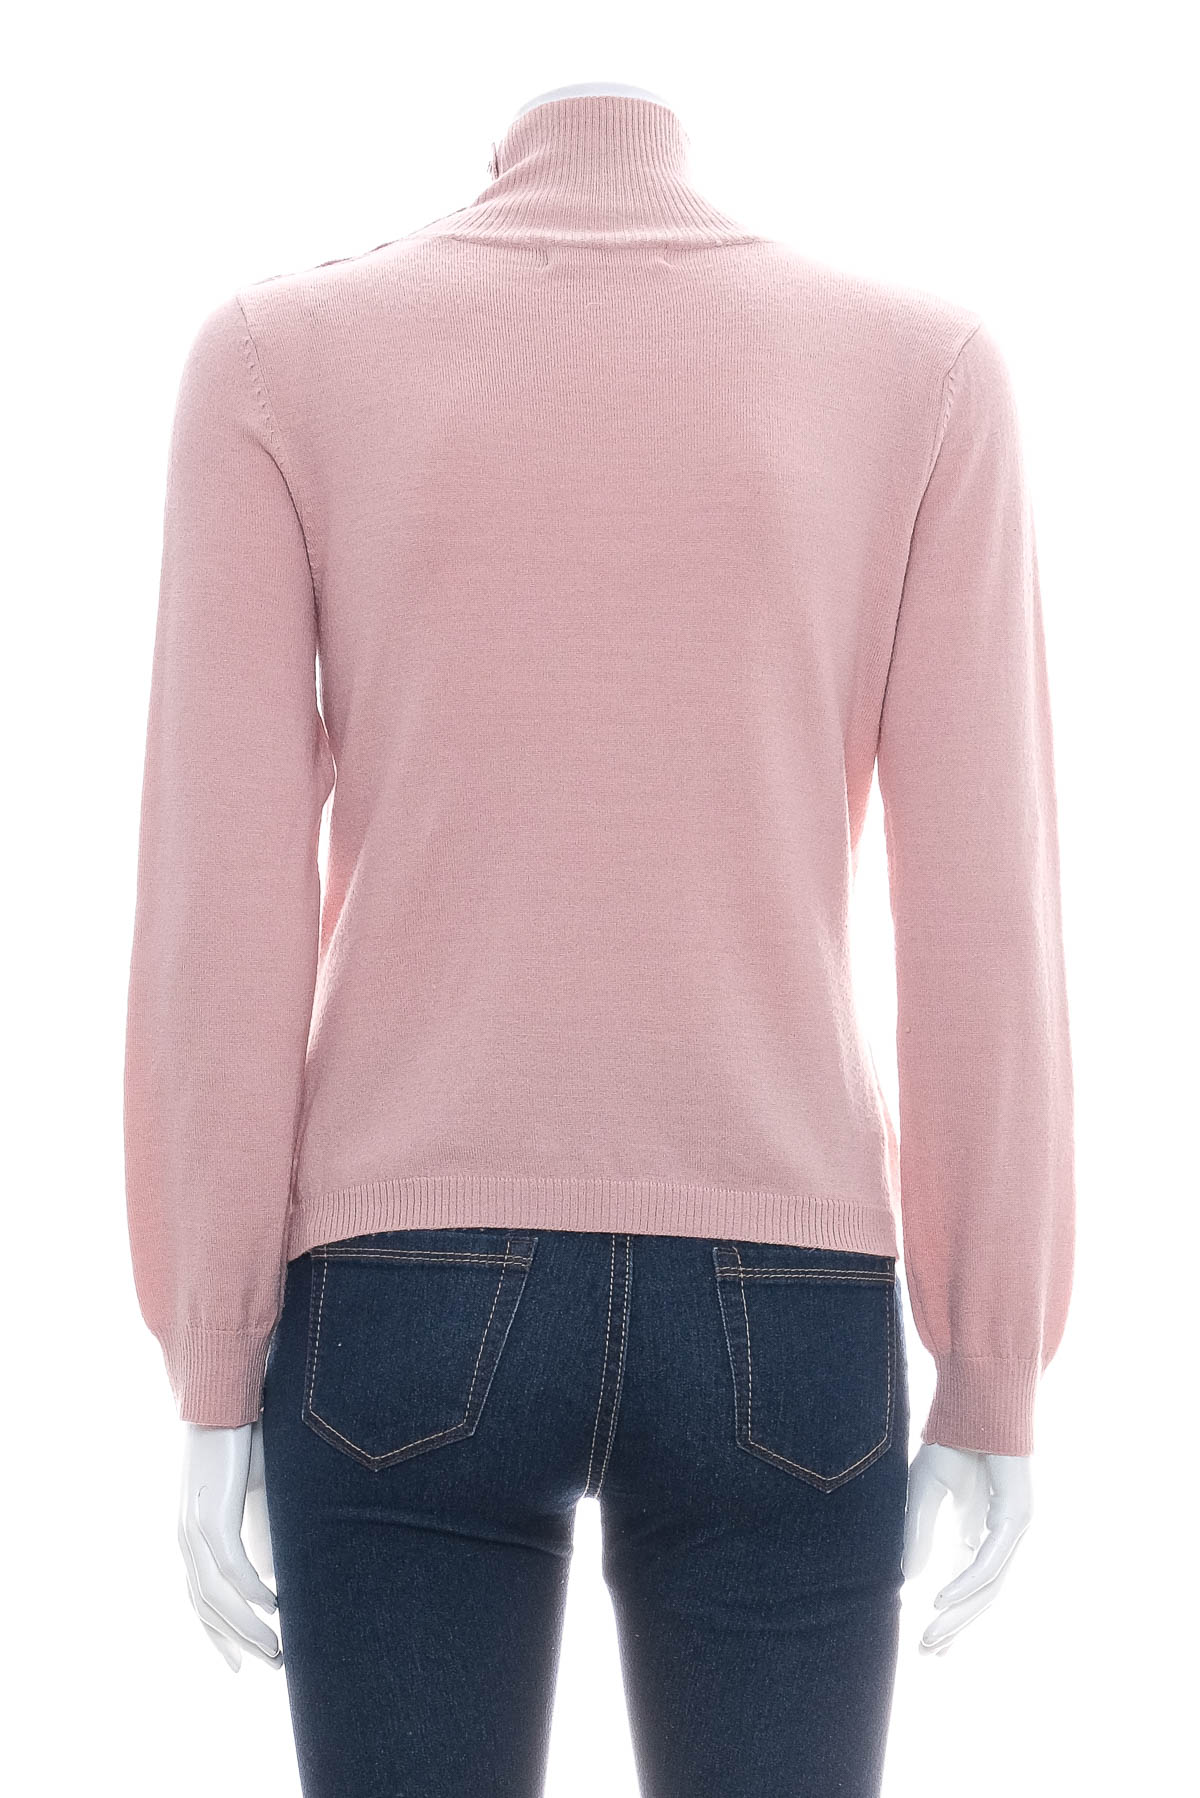 Women's sweater - En-Suey - 1